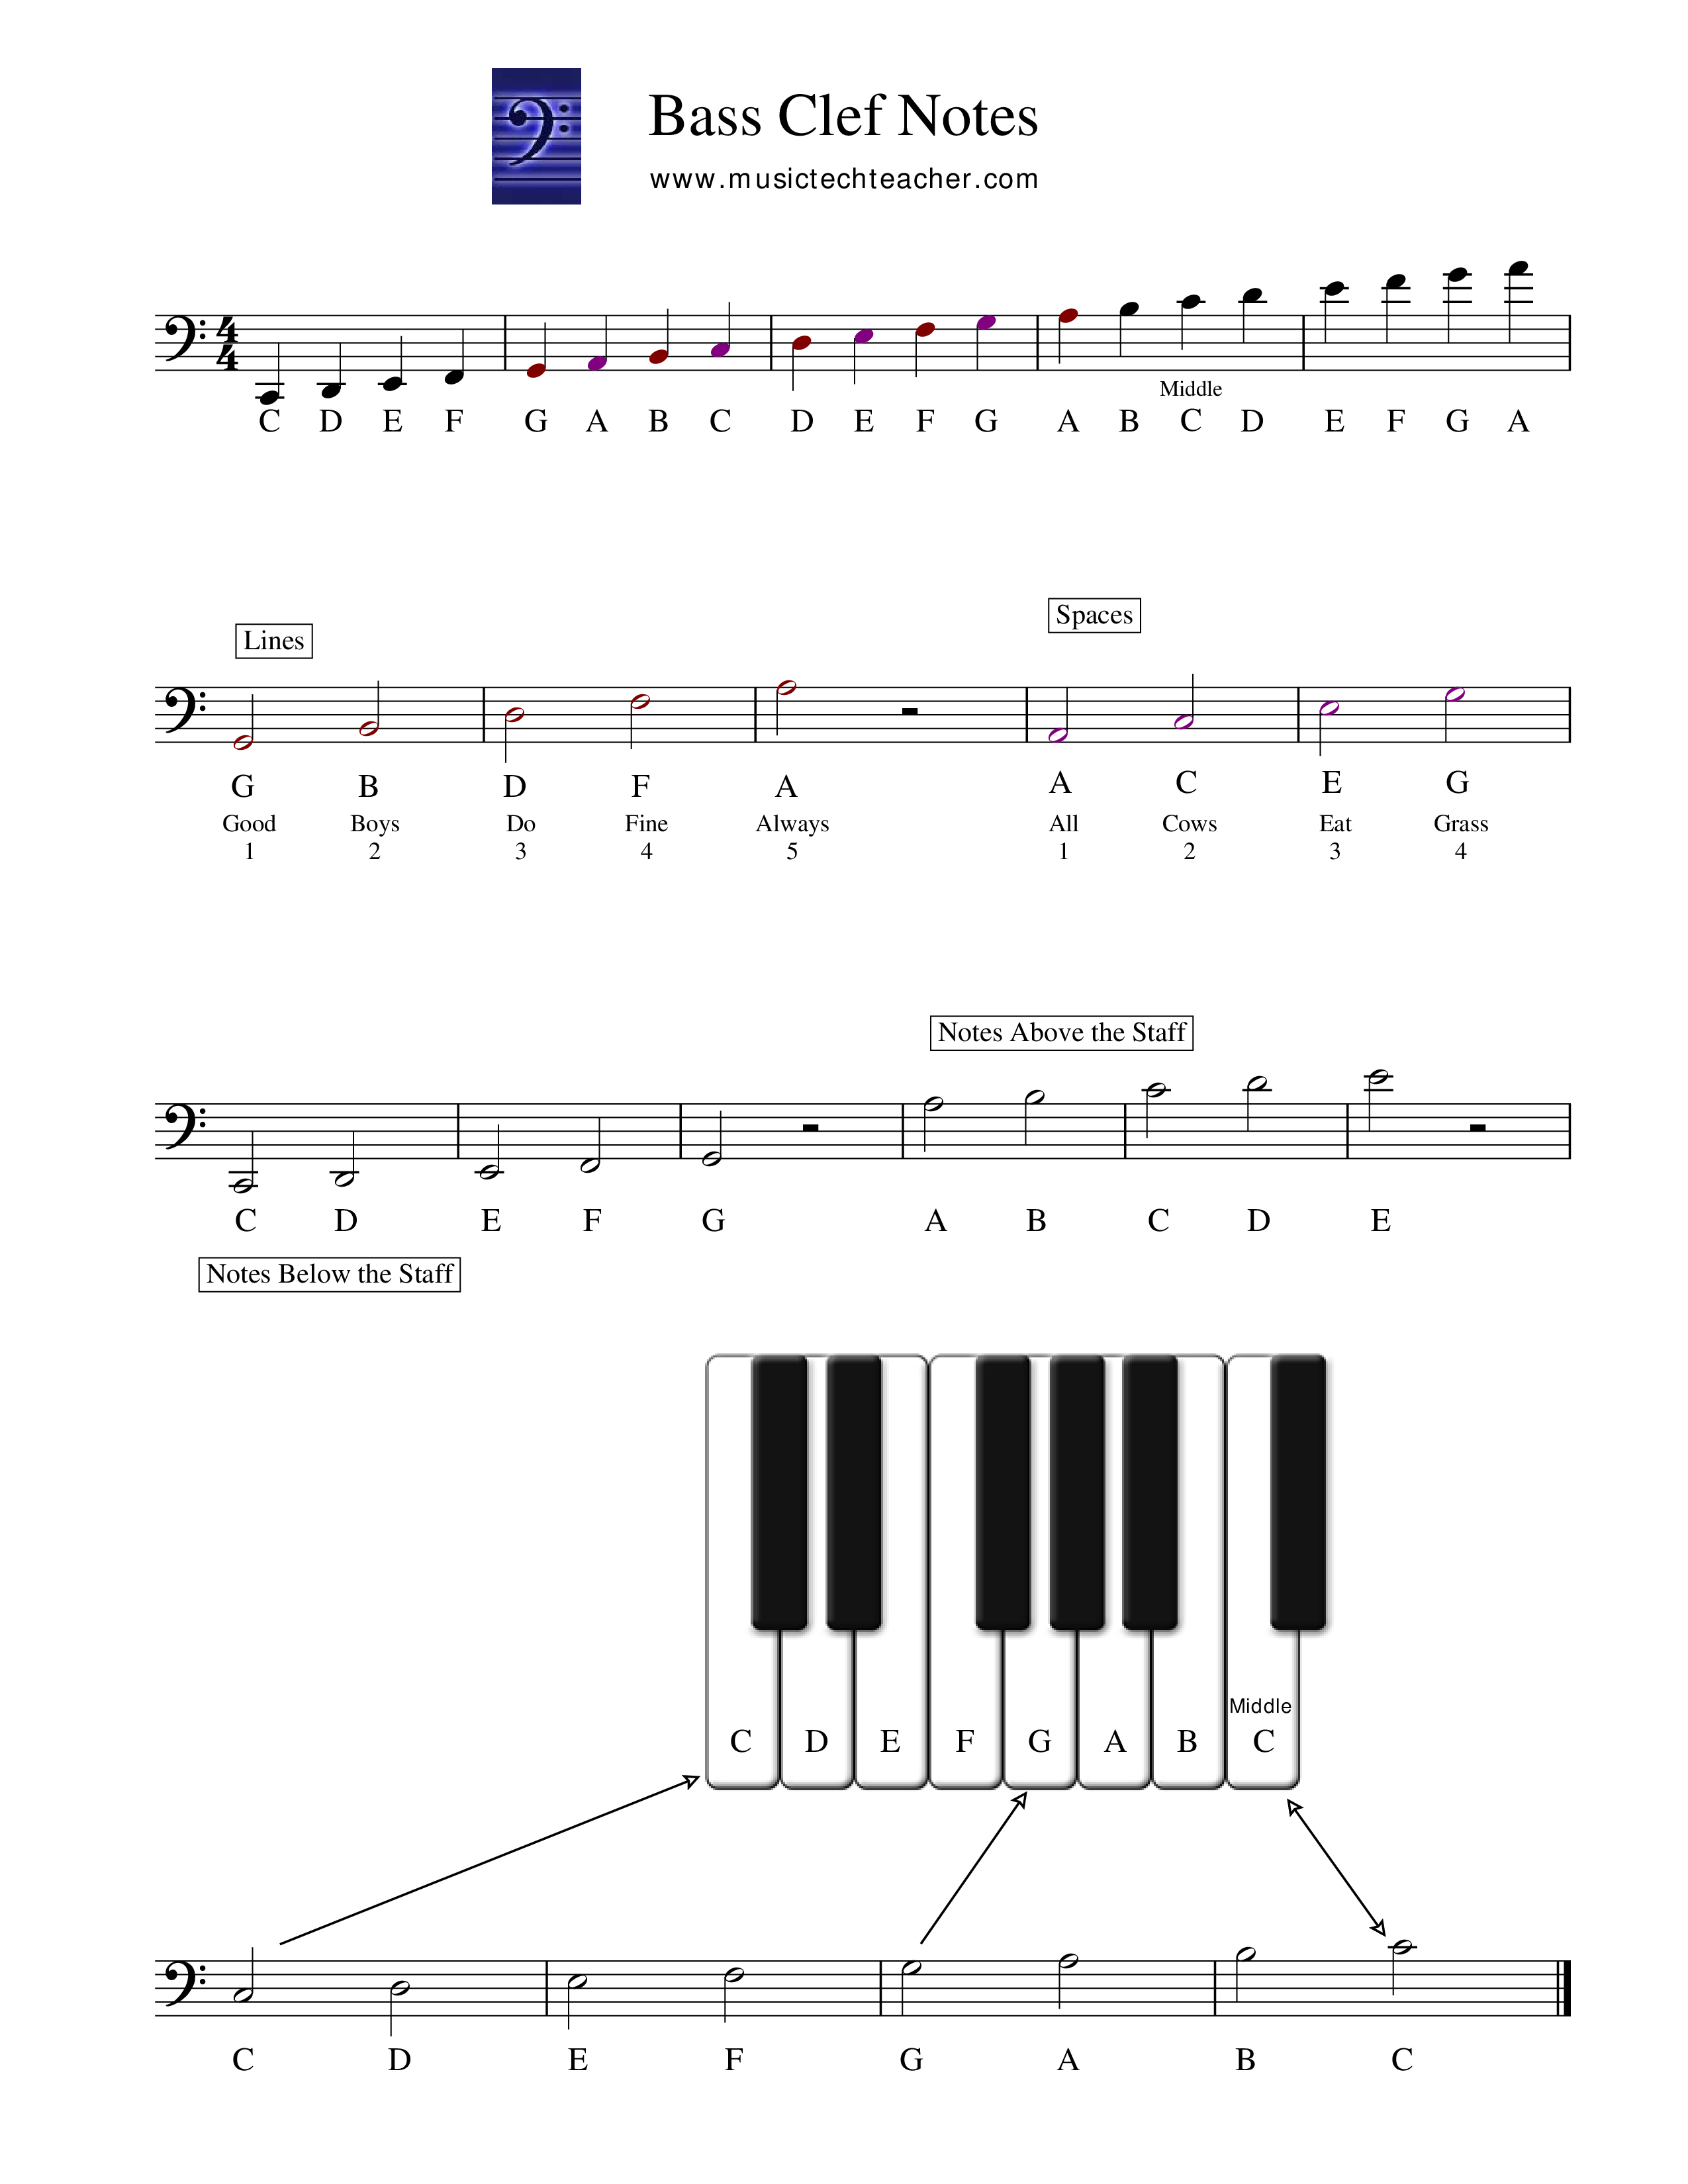 piano bass notes chart voorbeeld afbeelding 